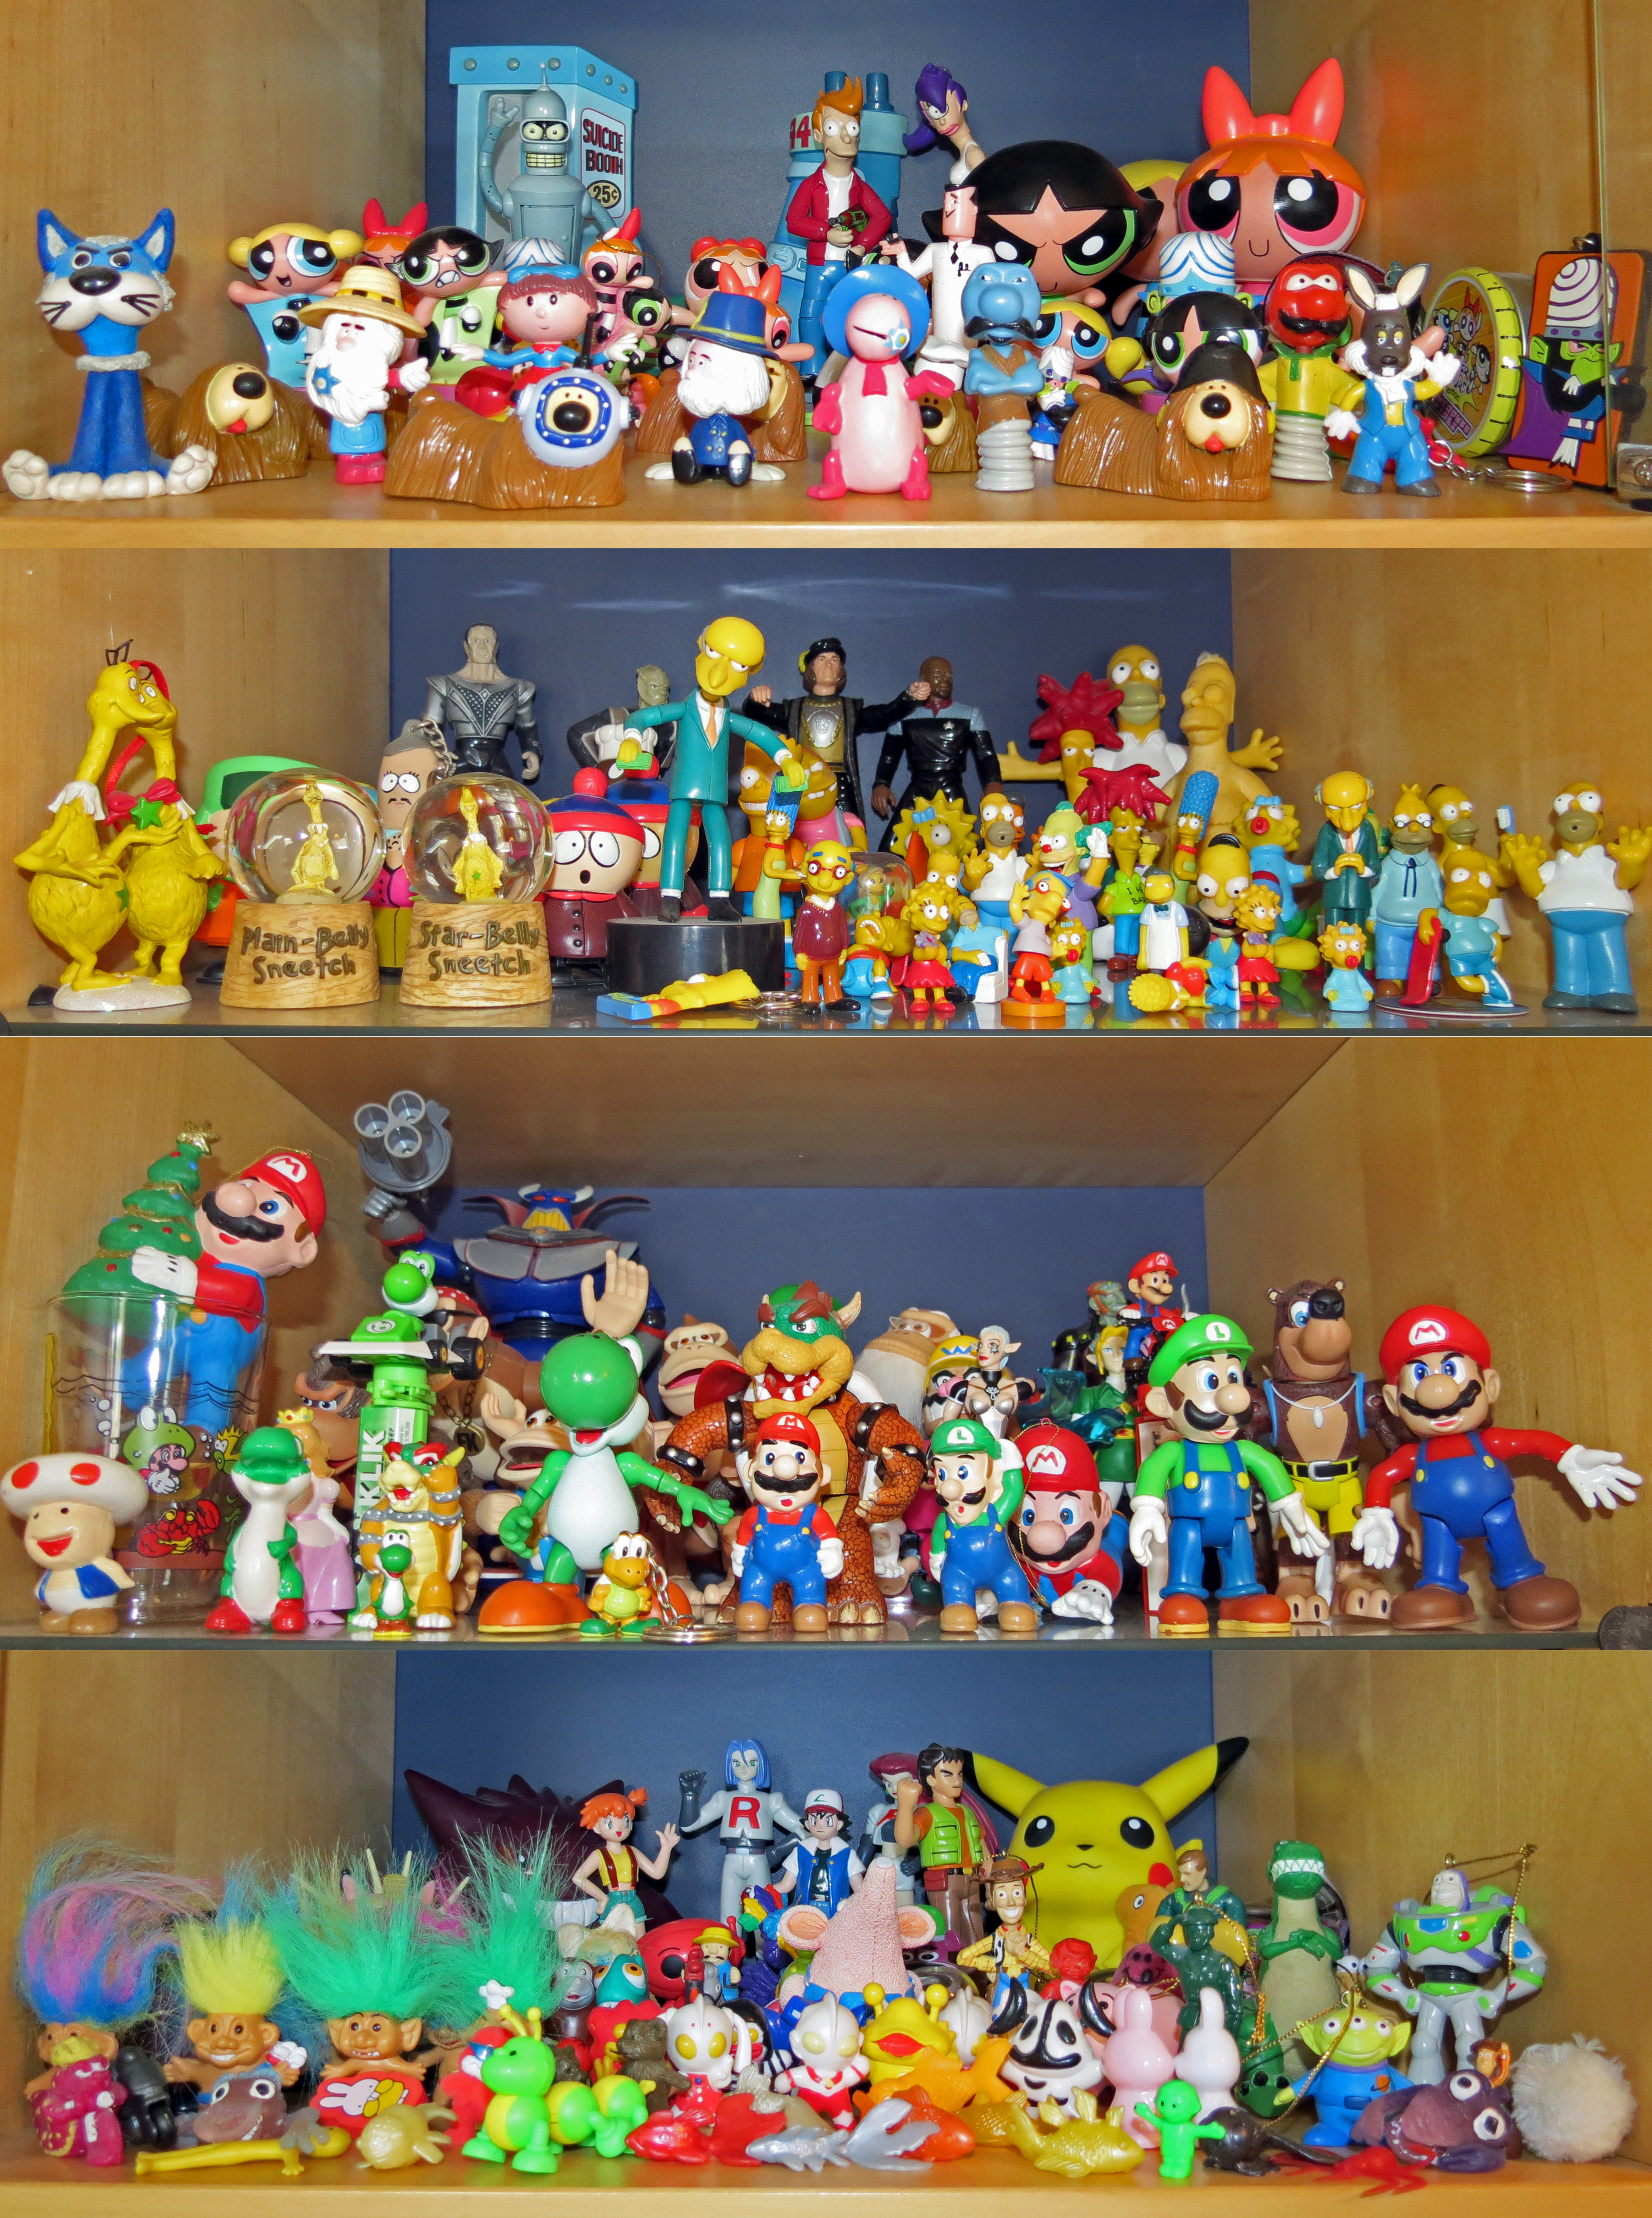 Collection hobbies. Коллекция игрушек. Игрушки коллаж. Подставка под коллекцию игрушечных мультгероев. Коллекция игрушек в сундучках.